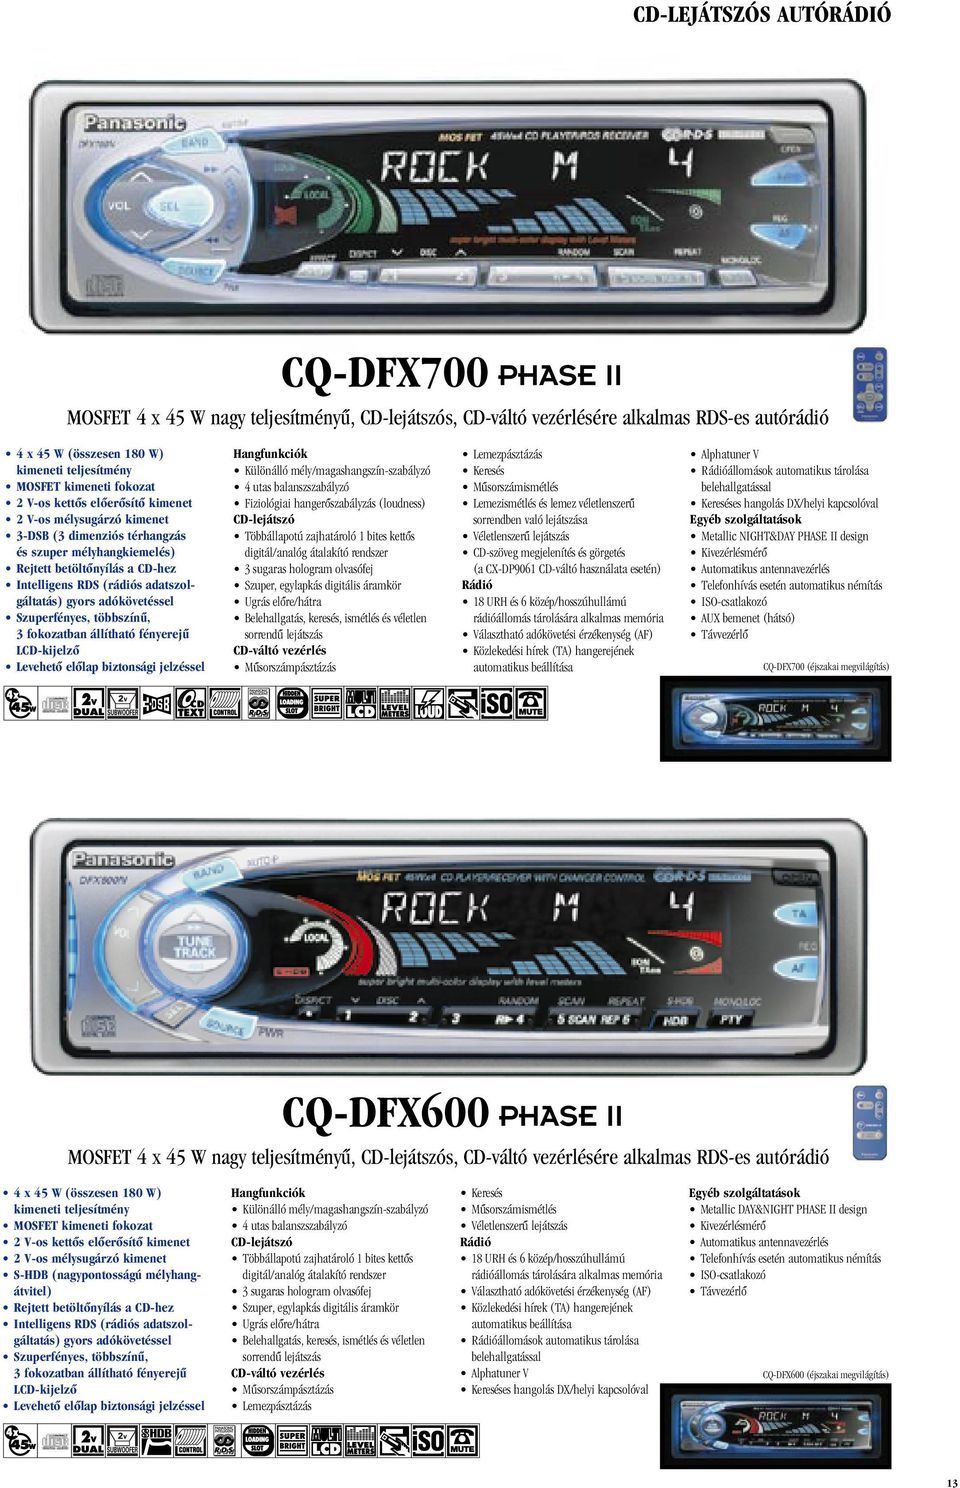 állítható fényerejû LCD-kijelzô Hangfunkciók Különálló mély/magashangszín-szabályzó 4 utas balanszszabályzó Fiziológiai hangerôszabályzás (loudness) CD-lejátszó Többállapotú zajhatároló 1 bites